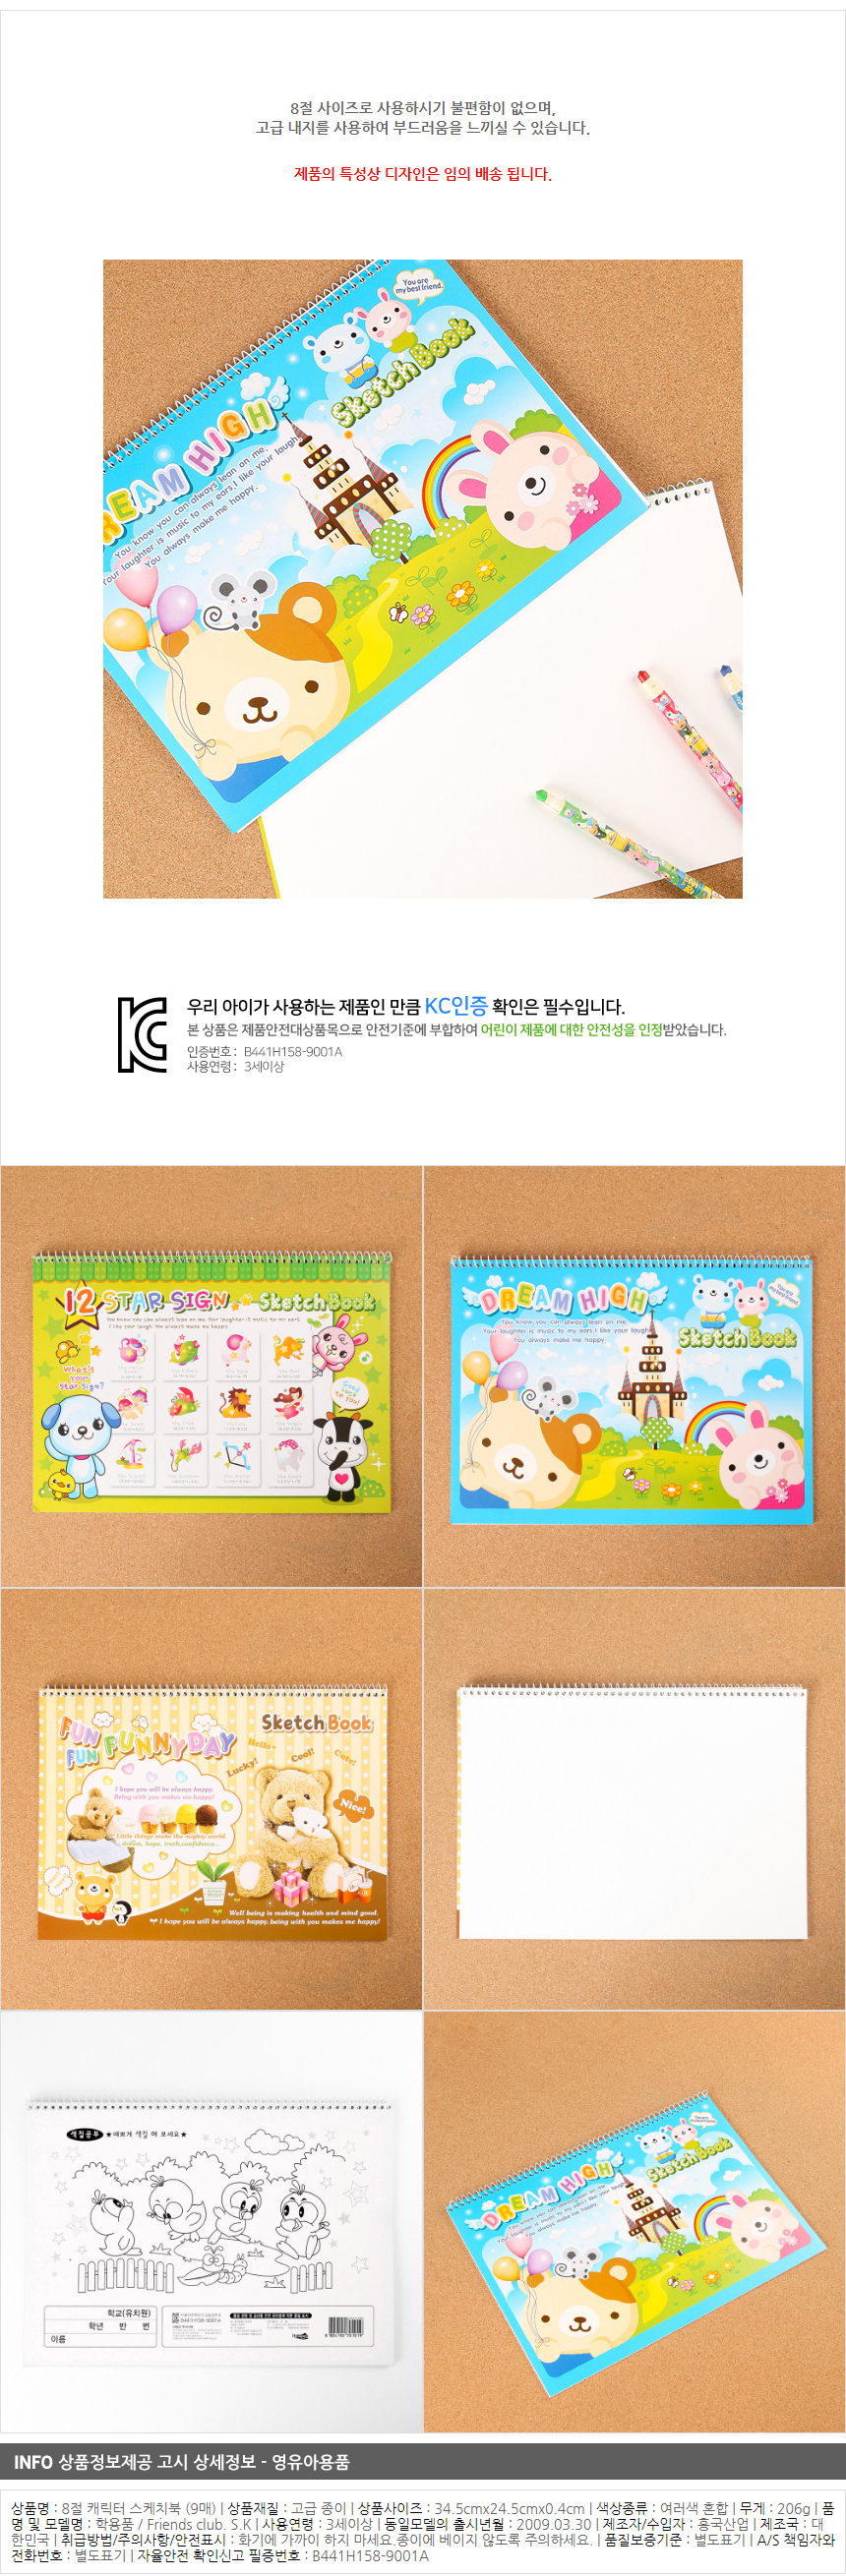 8절 캐릭터 스케치북 (11매)/문구점 판매용 학교